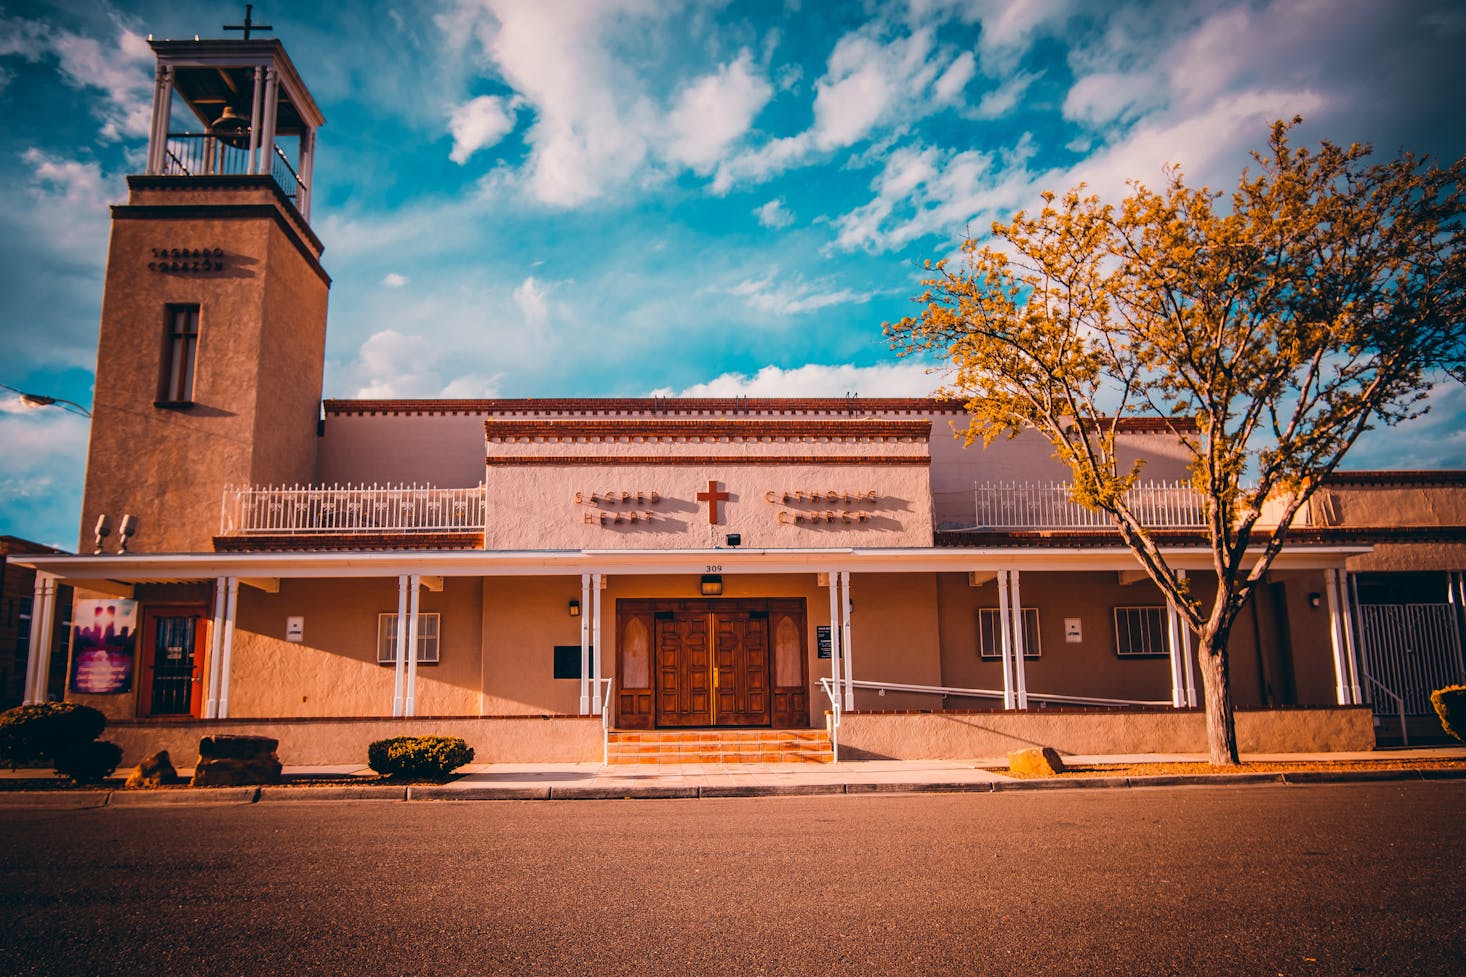 Church in Albuquerque, New Mexico